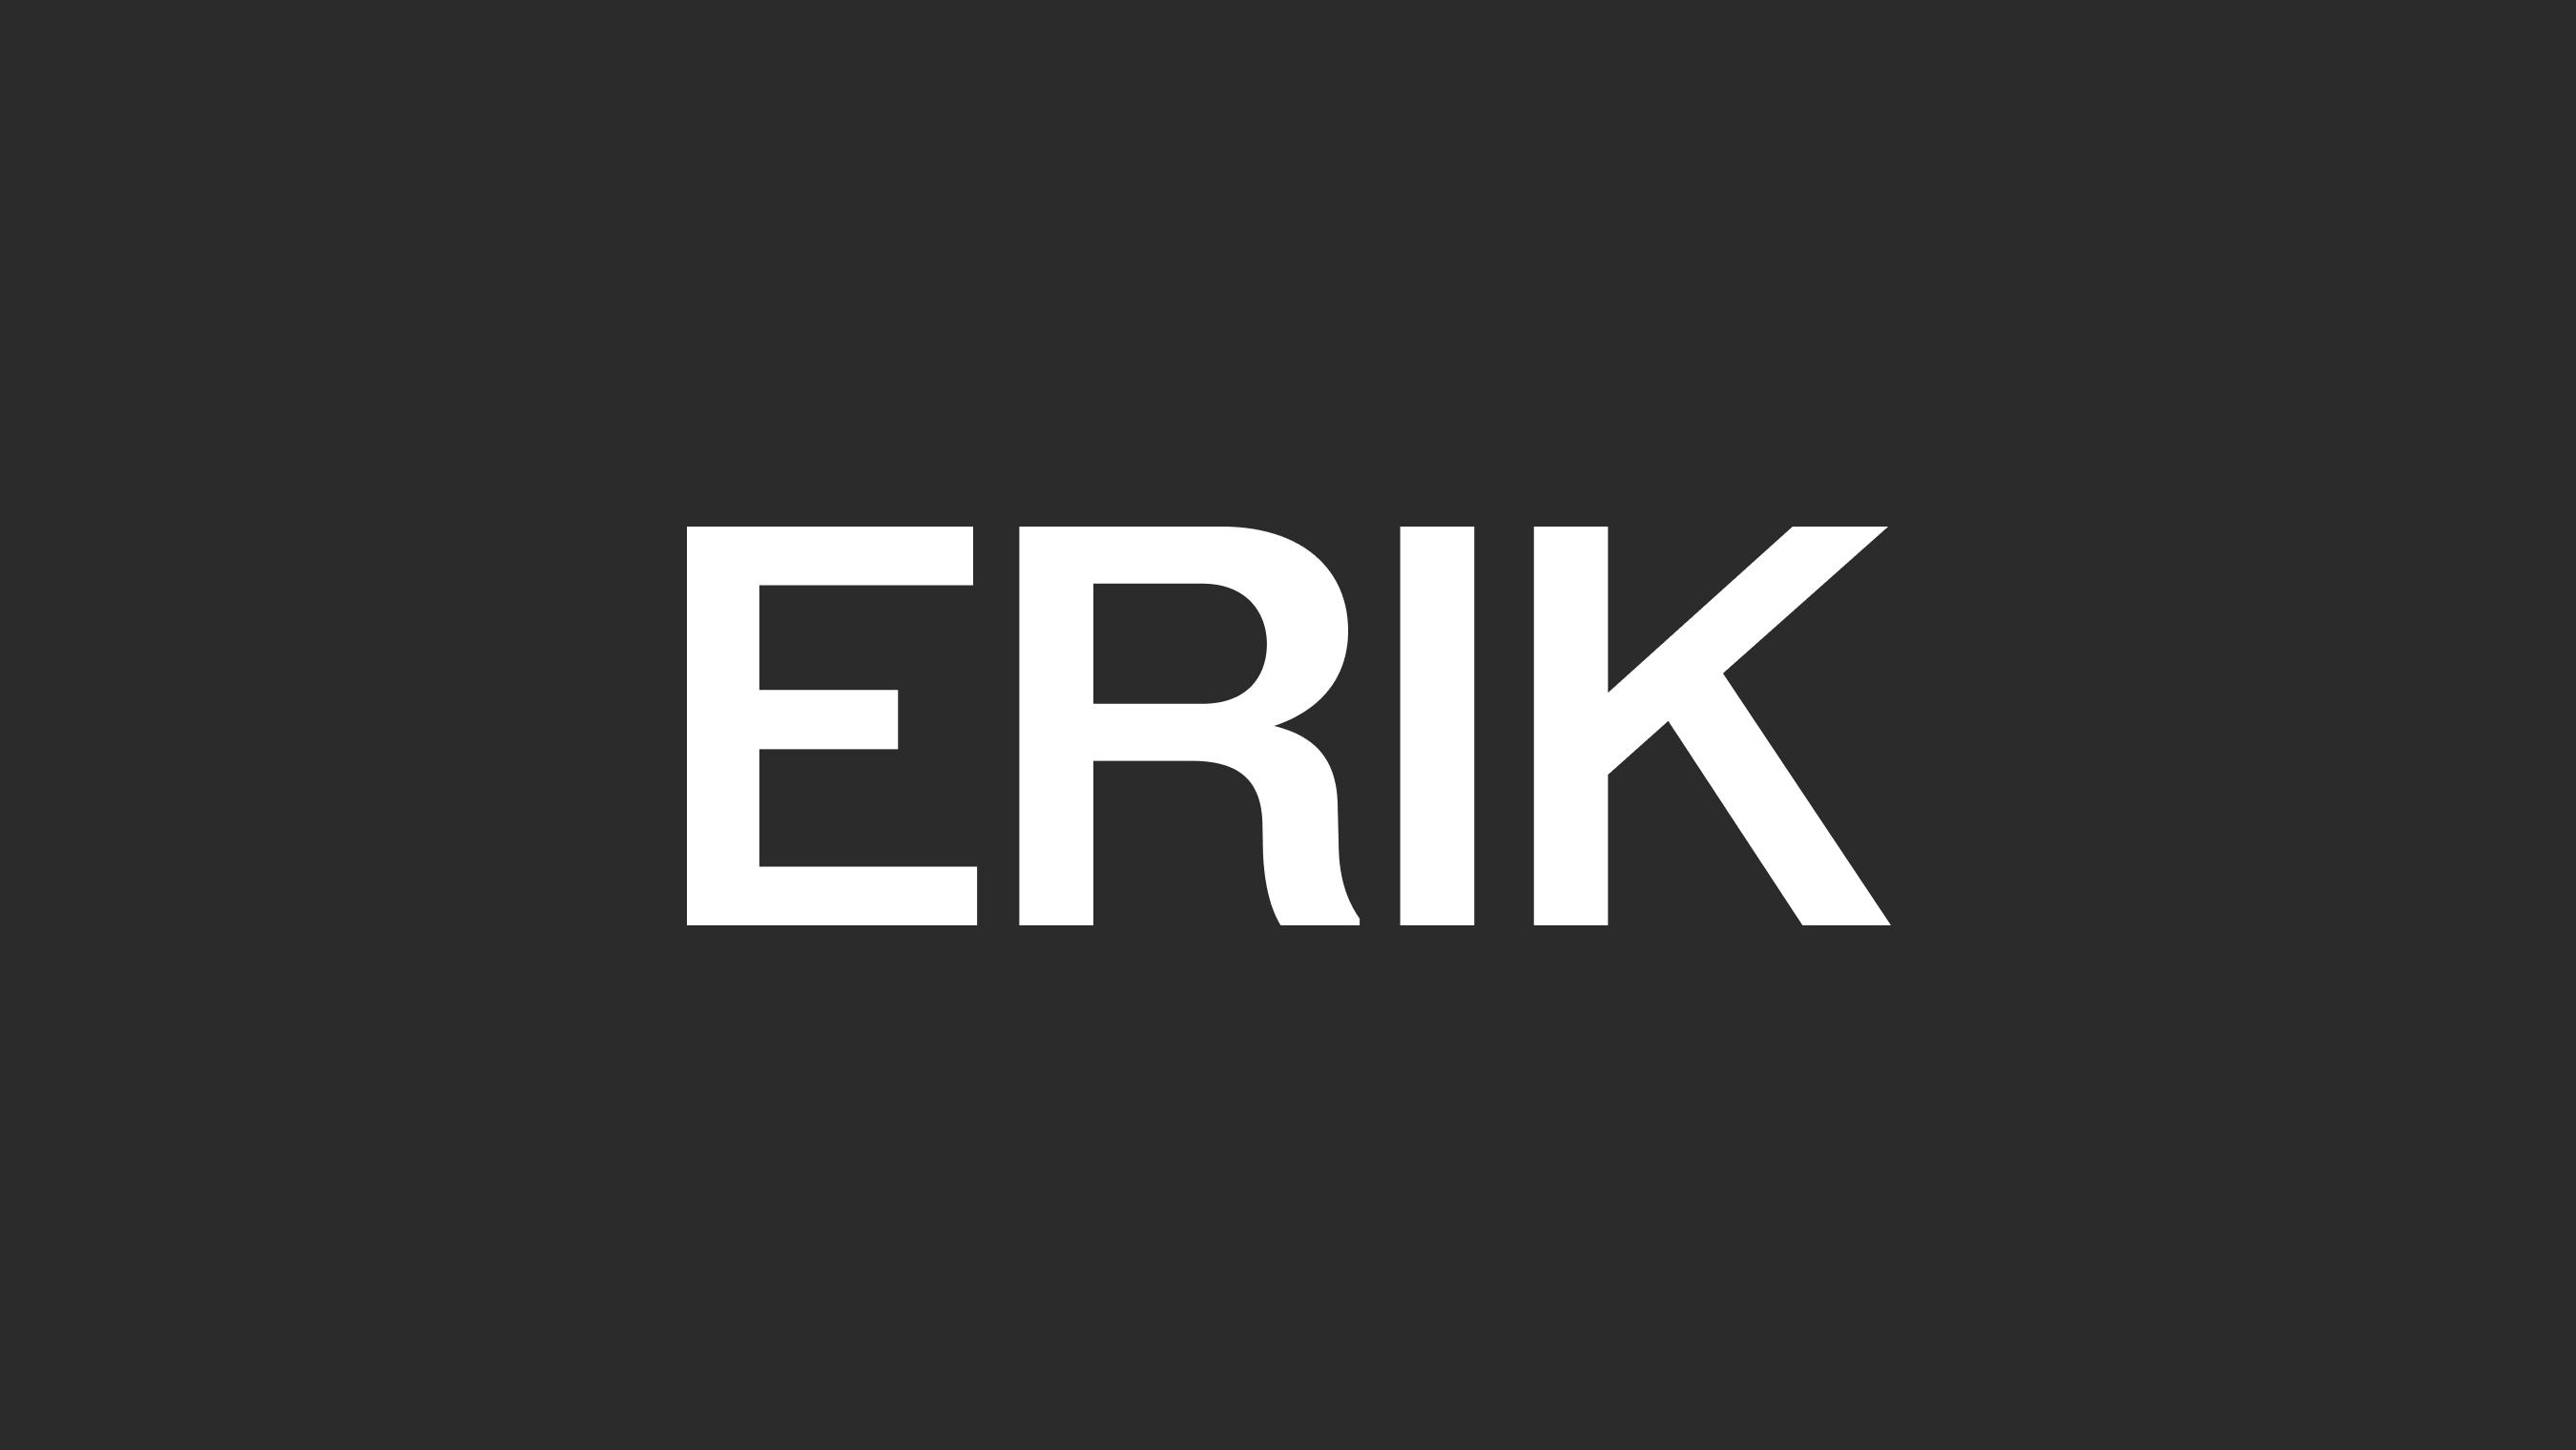 erik_brand_guide_logo_02